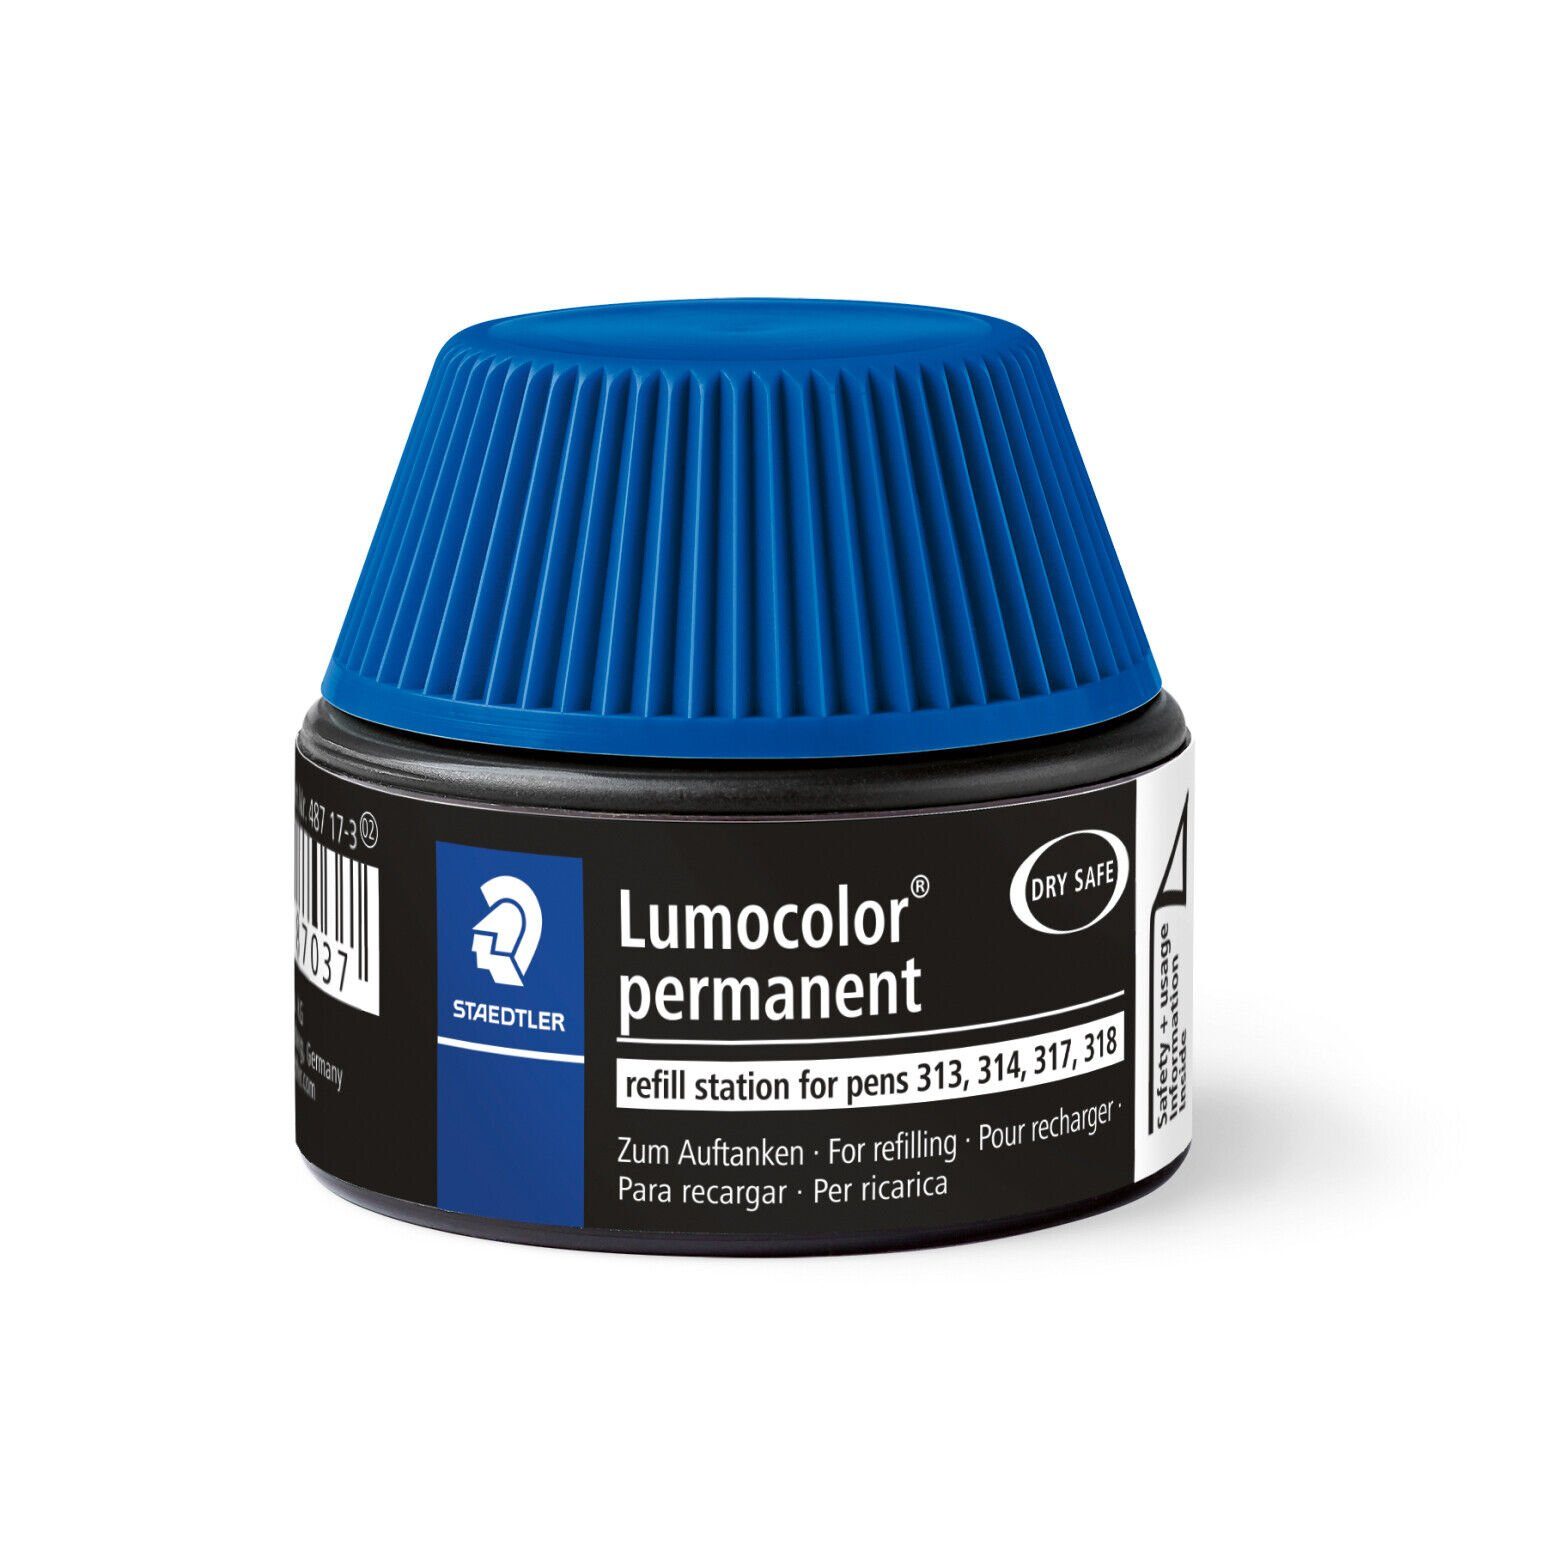 Refill lichtbeständig STAEDTLER STAEDTLER wasserfest, blau, Nachfülltinte Marker Lumocolor® permanent 17-3 487